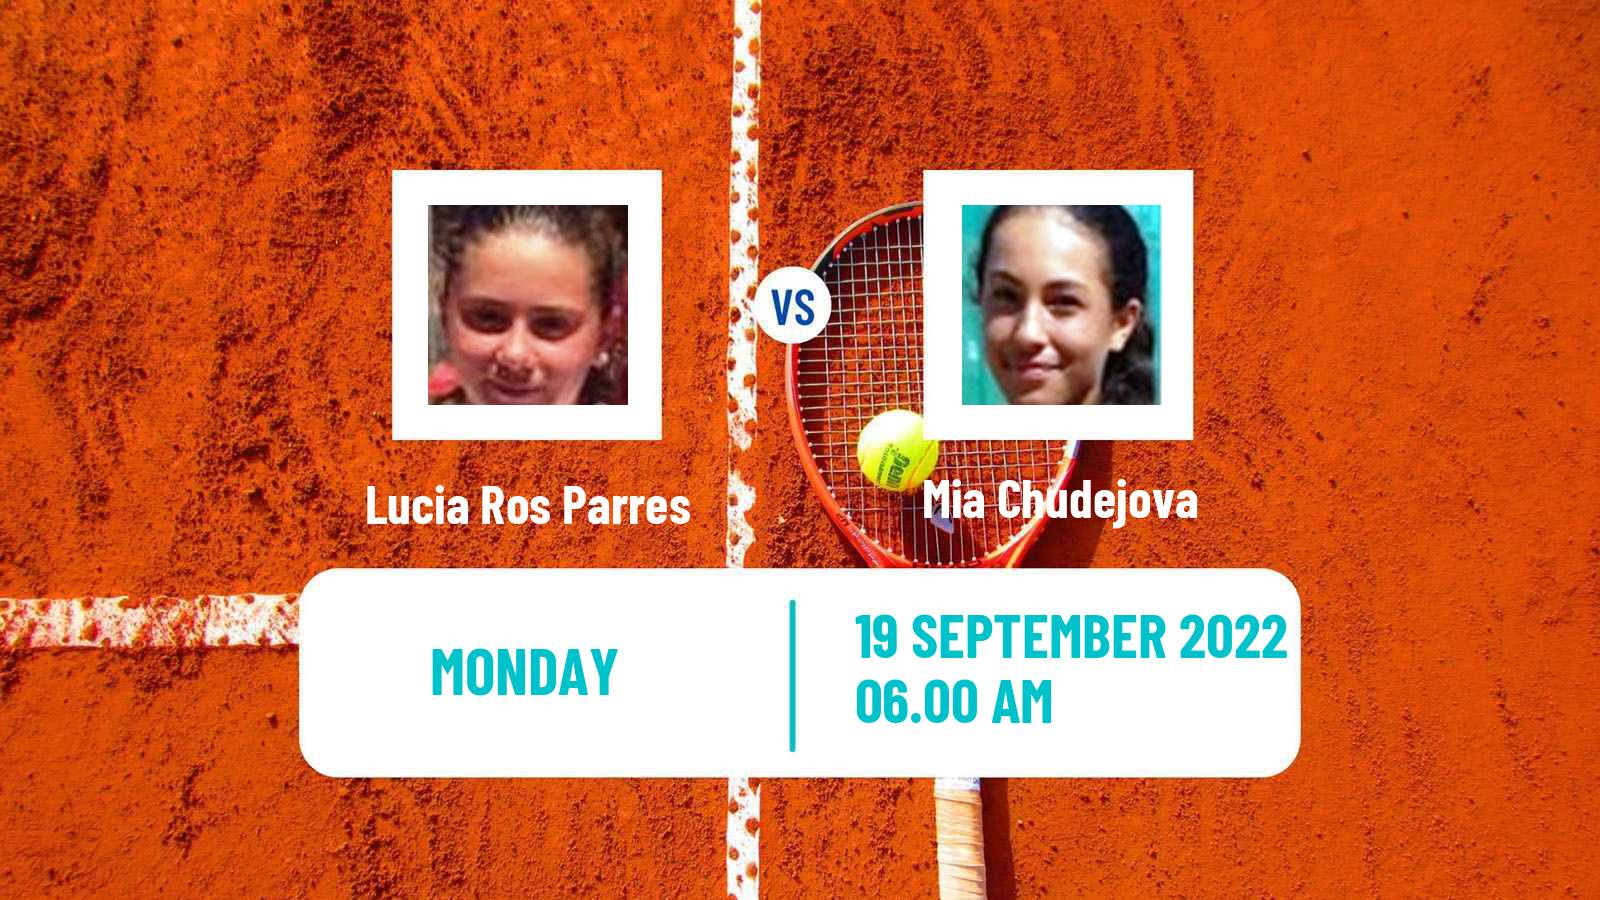 Tennis ITF Tournaments Lucia Ros Parres - Mia Chudejova